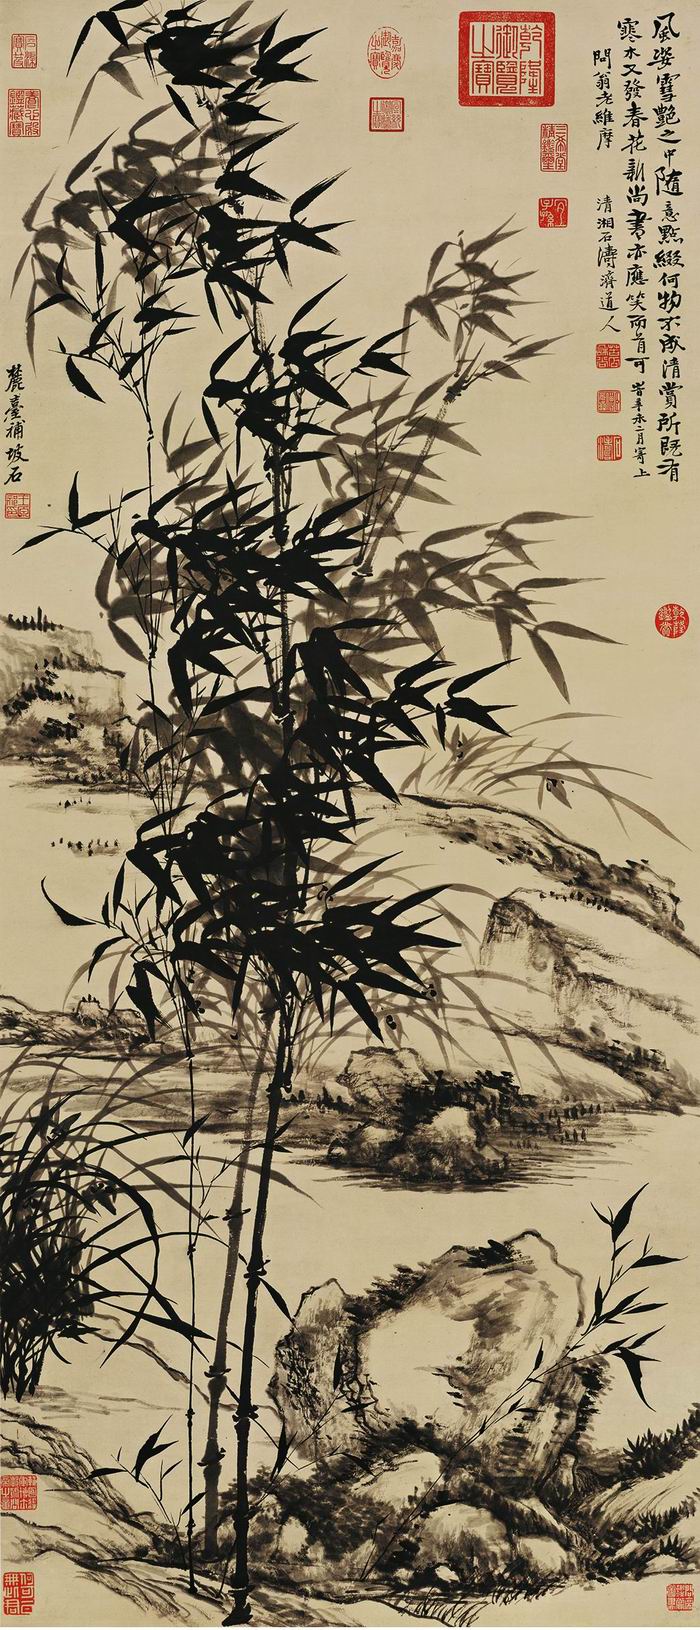 石涛 王原祁 《兰竹图轴》 纸本墨笔 133.5cm×57.3cm 1691年 台北故宫博物院藏